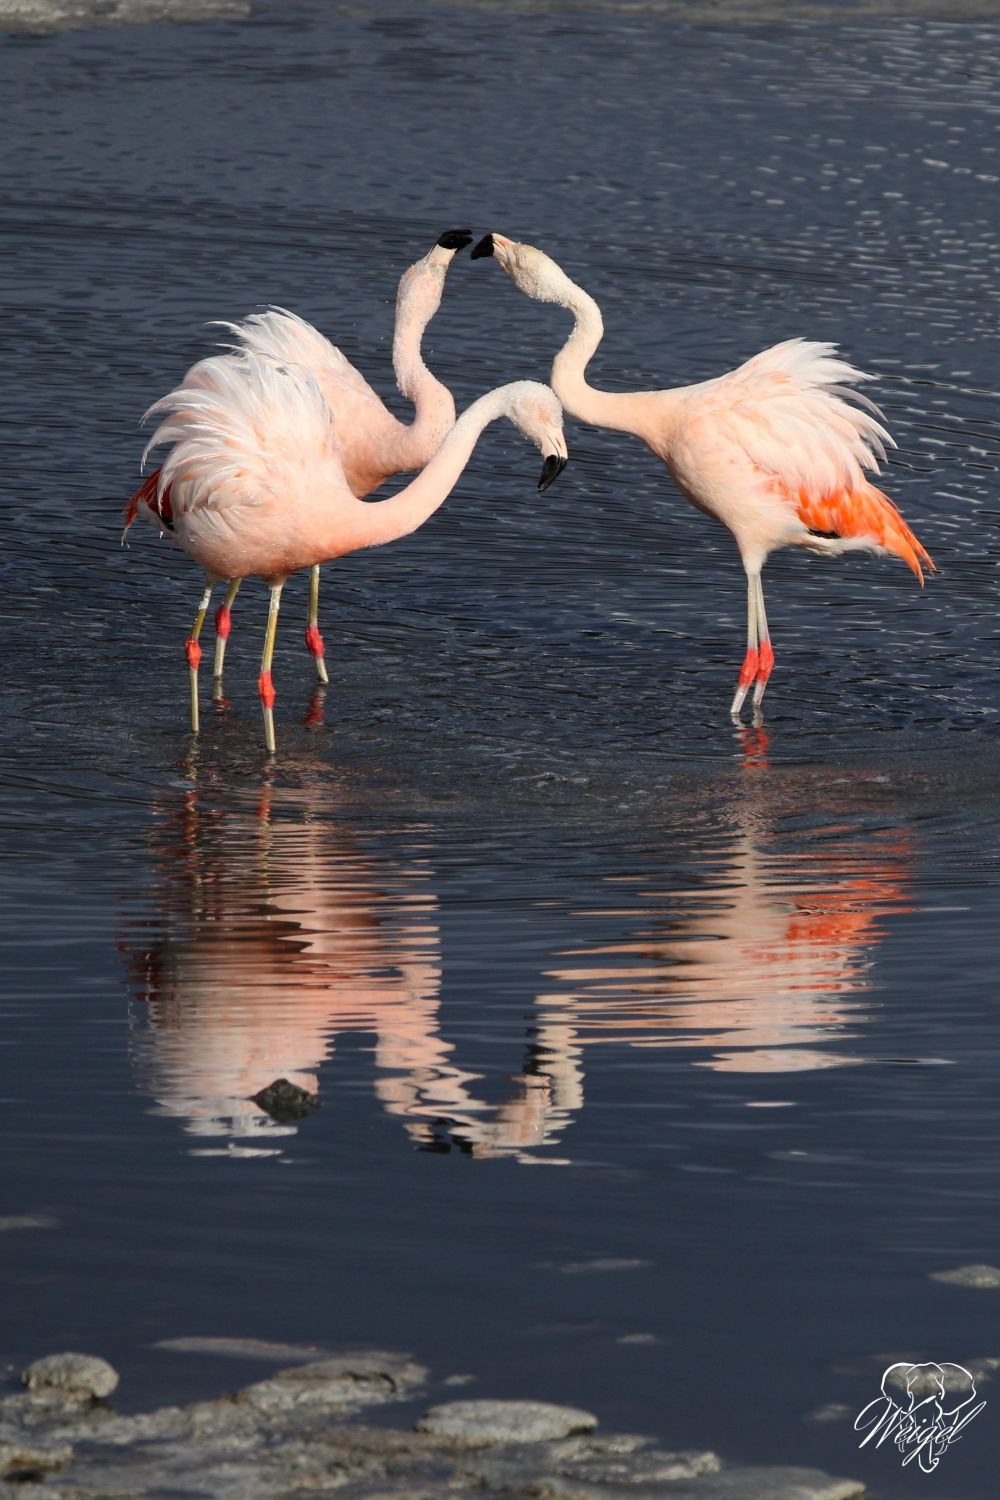 Tanz der Flamingos in Patagonien